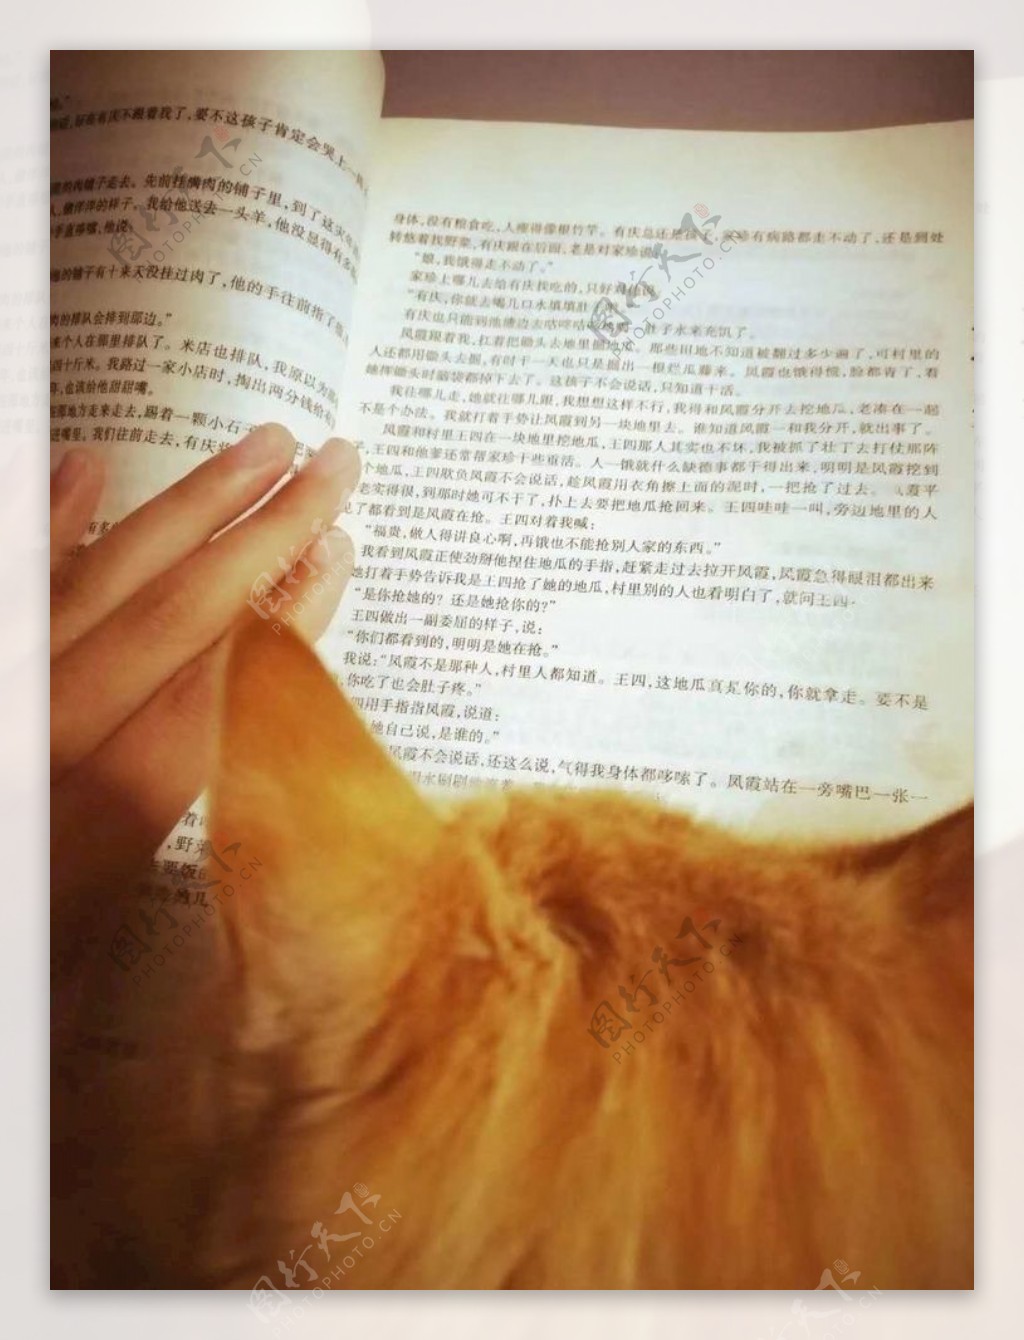 猫与书